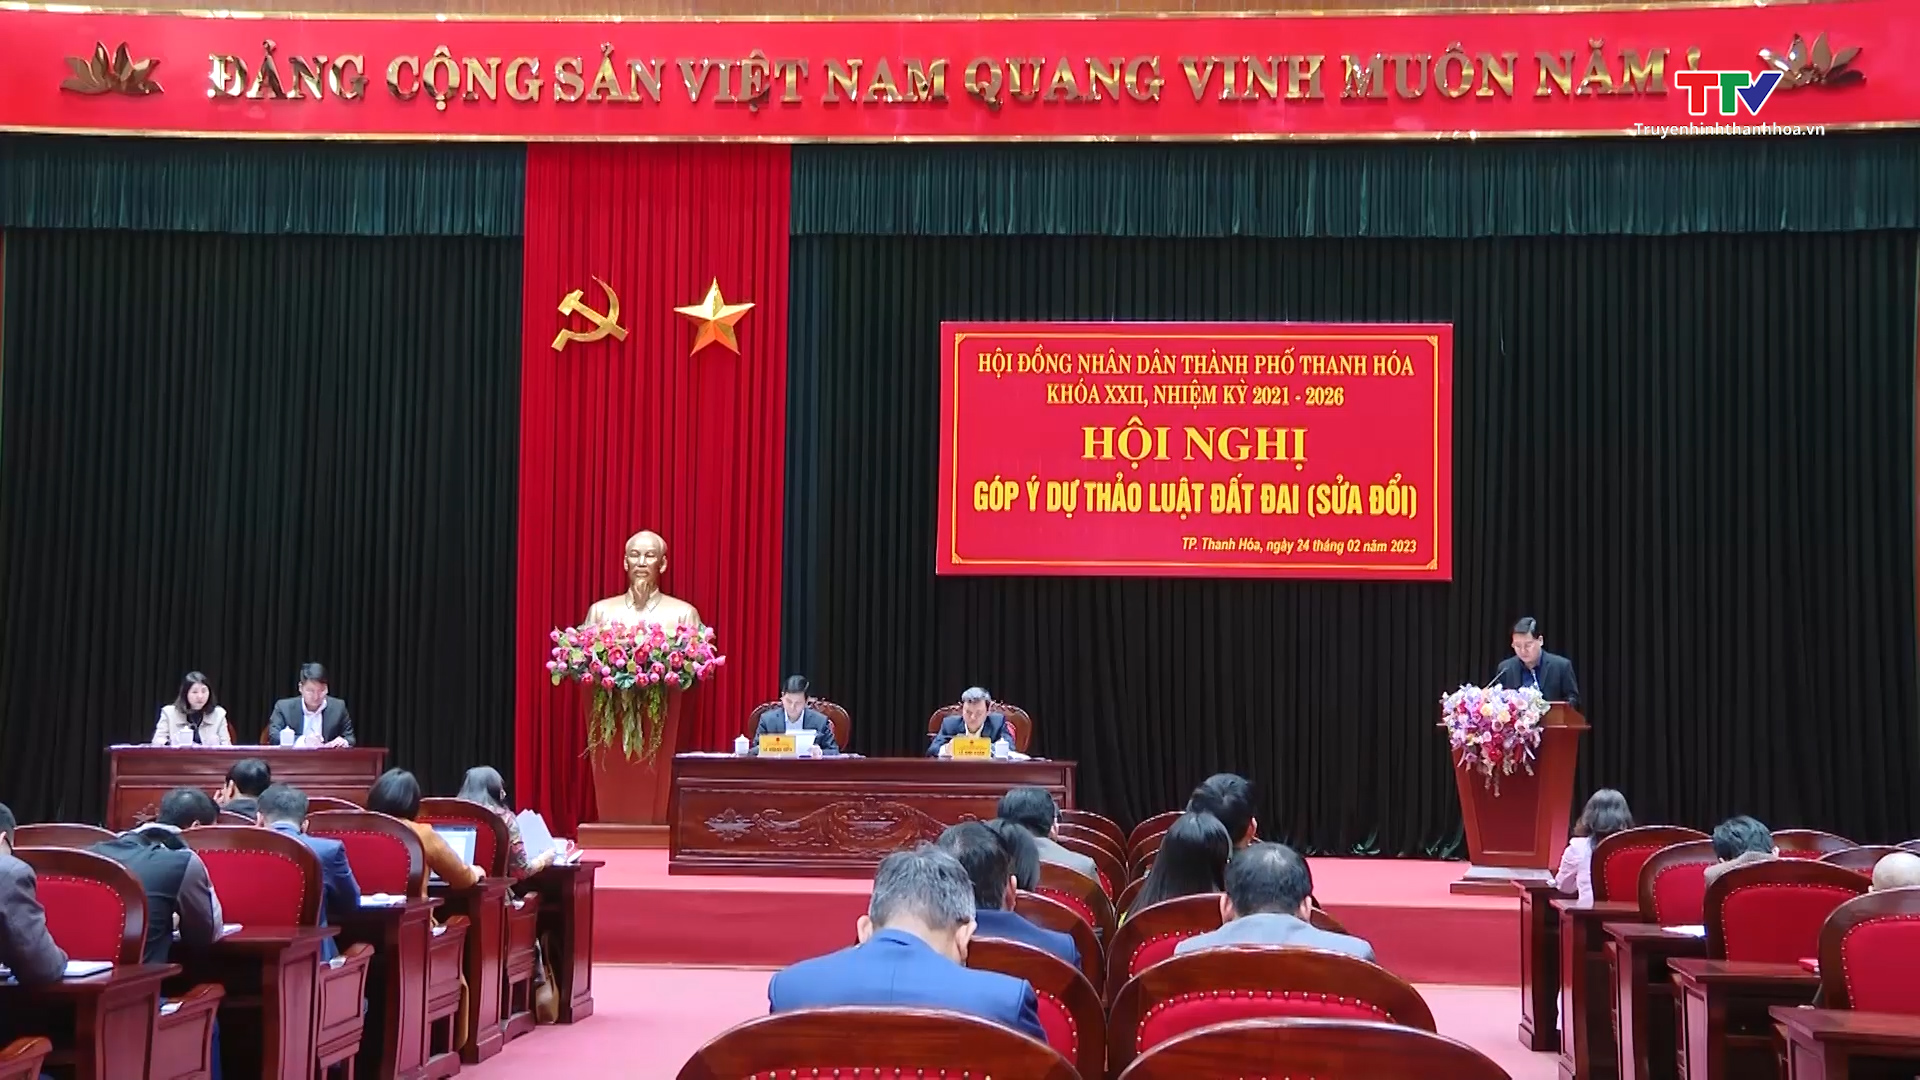 Hội đồng Nhân dân thành phố Thanh Hoá góp ý vào dự thảo Luật Đất đai (sửa đổi) - Ảnh 2.